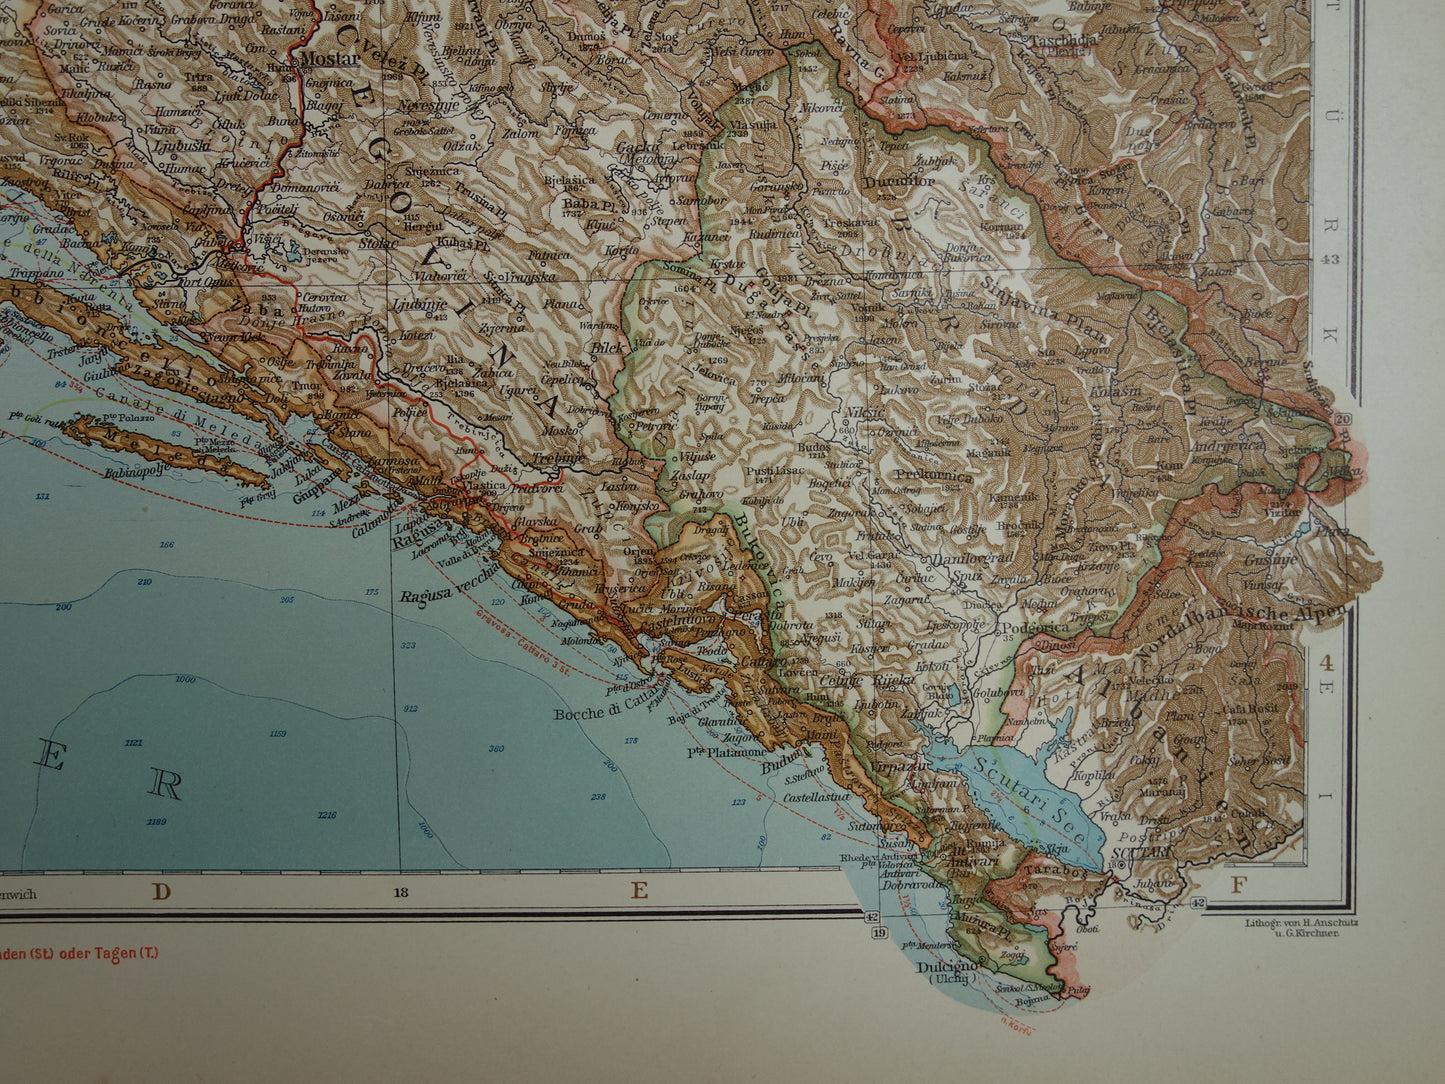 Oude kaart van Bosnië en Herzegovina Kroatië en Montenegro - Gedetailleerde grote landkaart met jaartal 1909 - Originele vintage kaarten